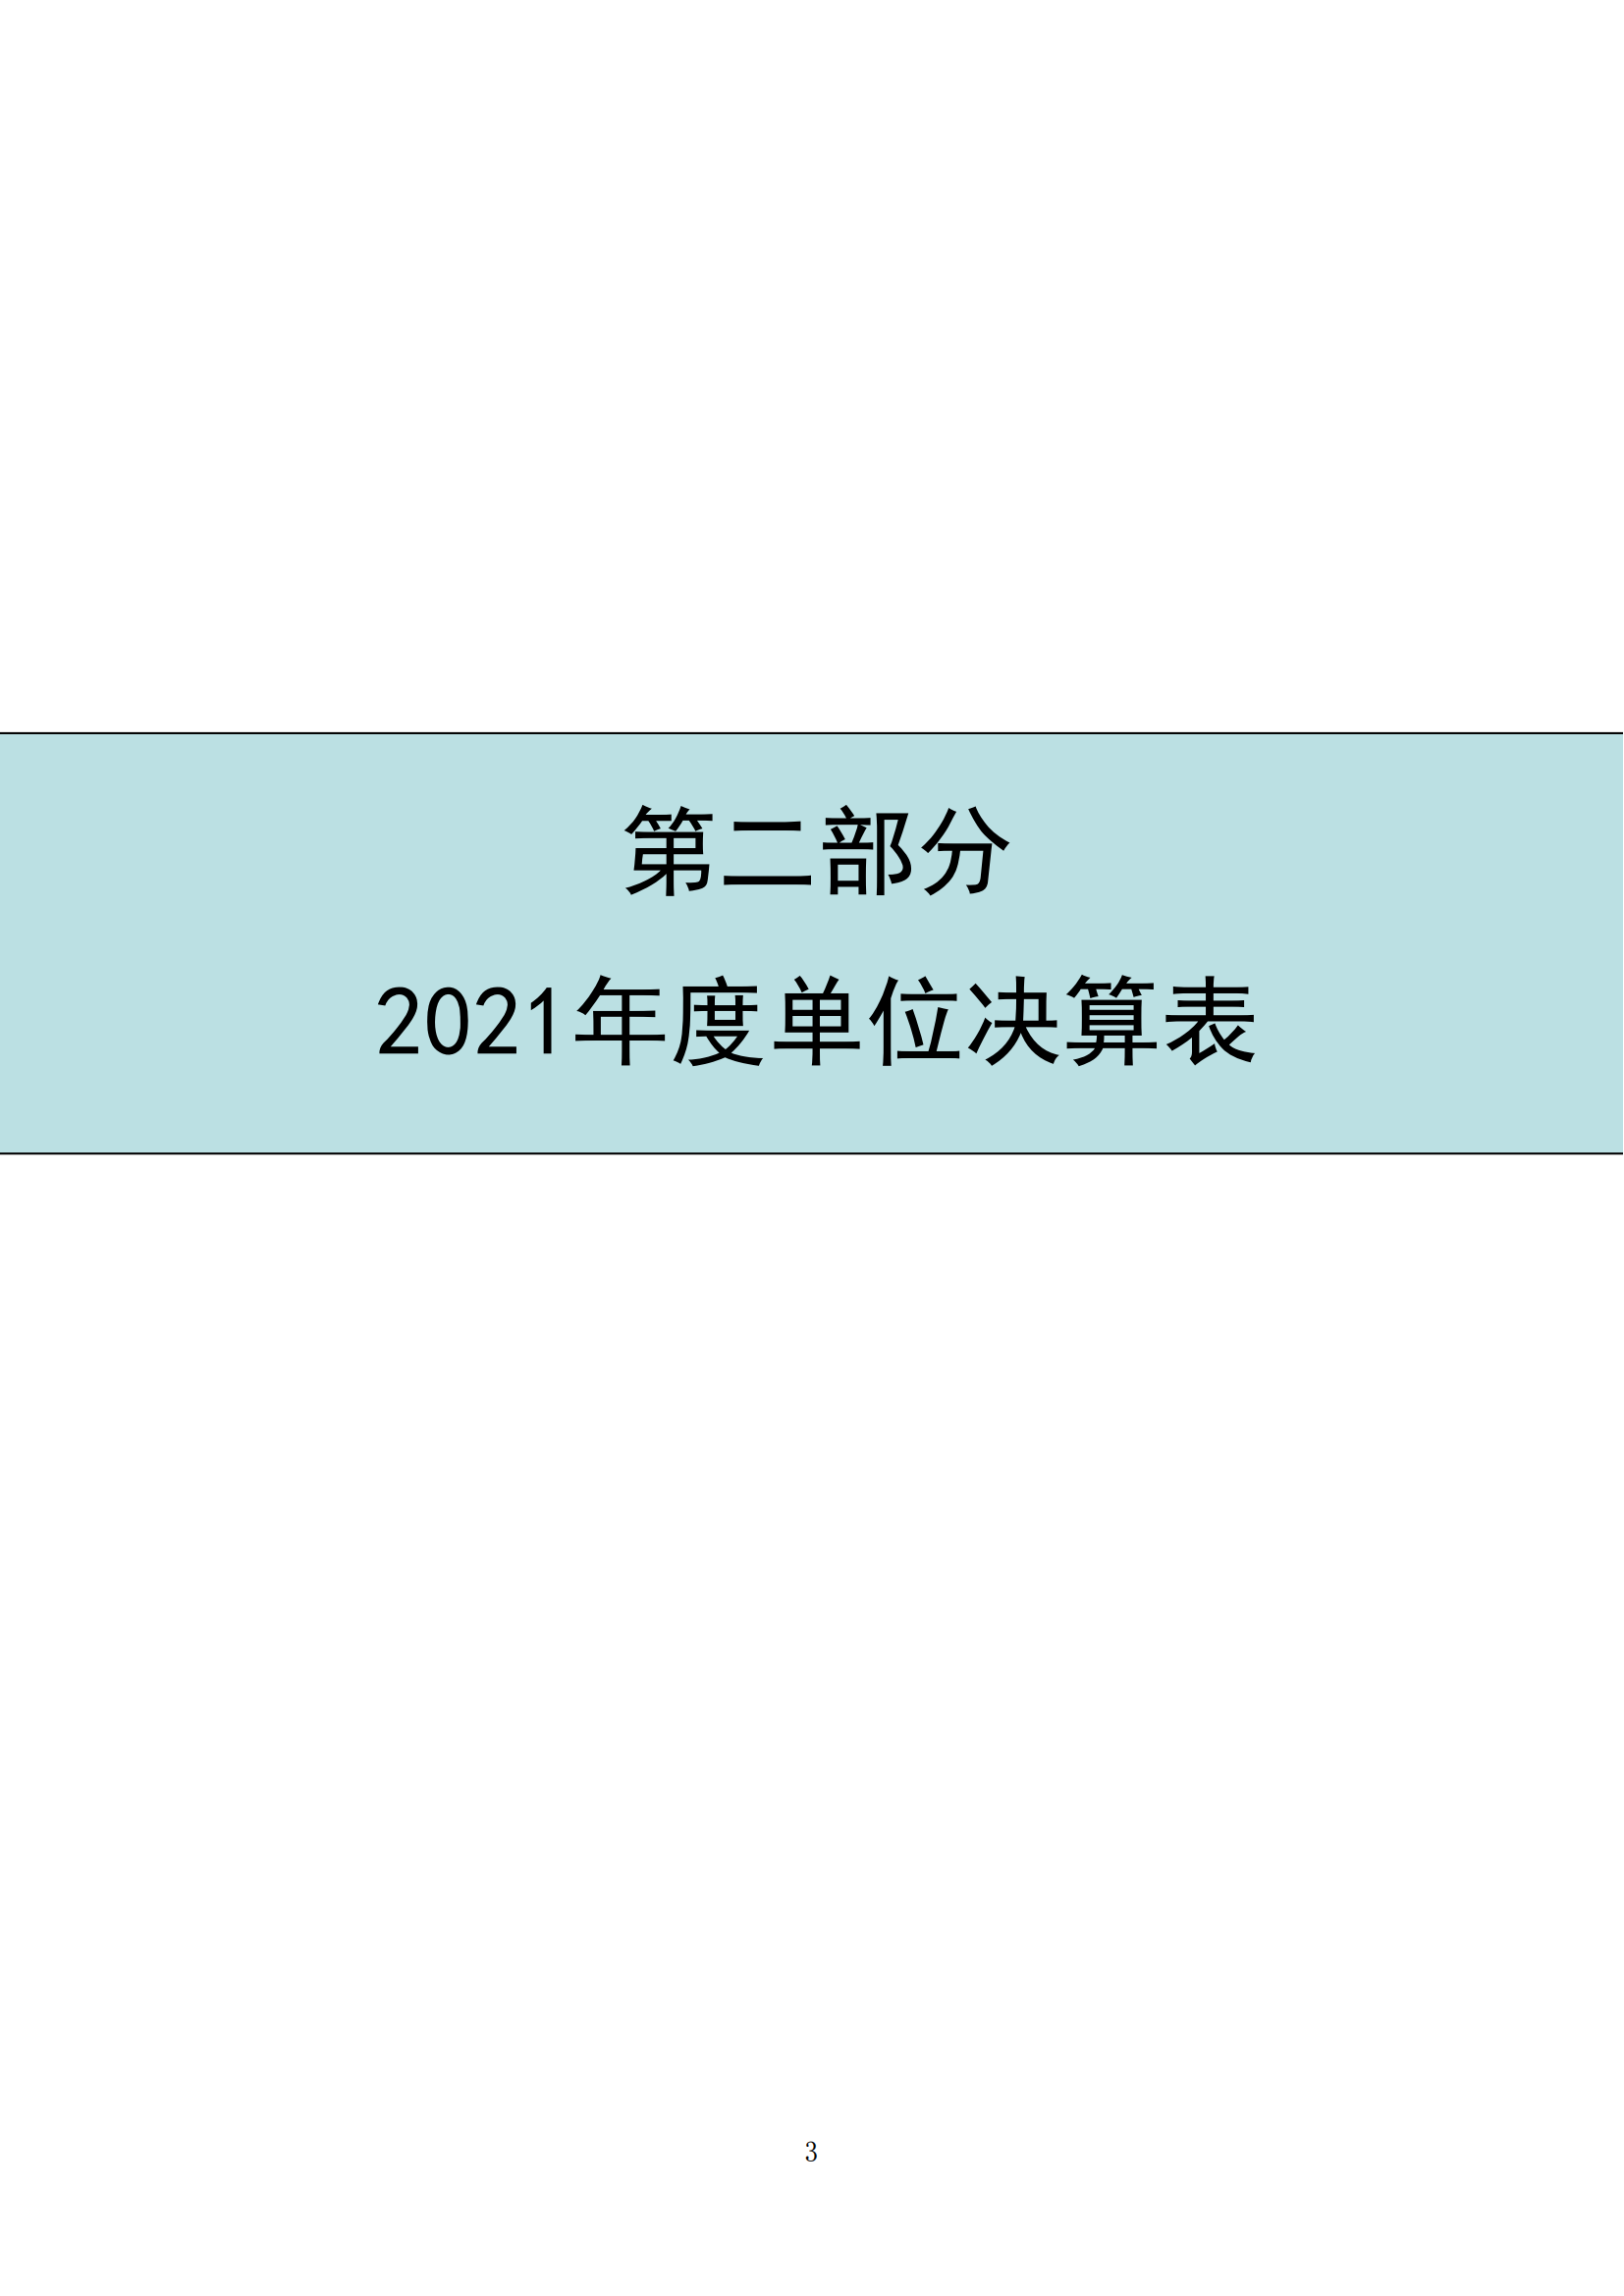 中国财政杂志社2021年度决算公开(8月10日周三统一公开）_05.png